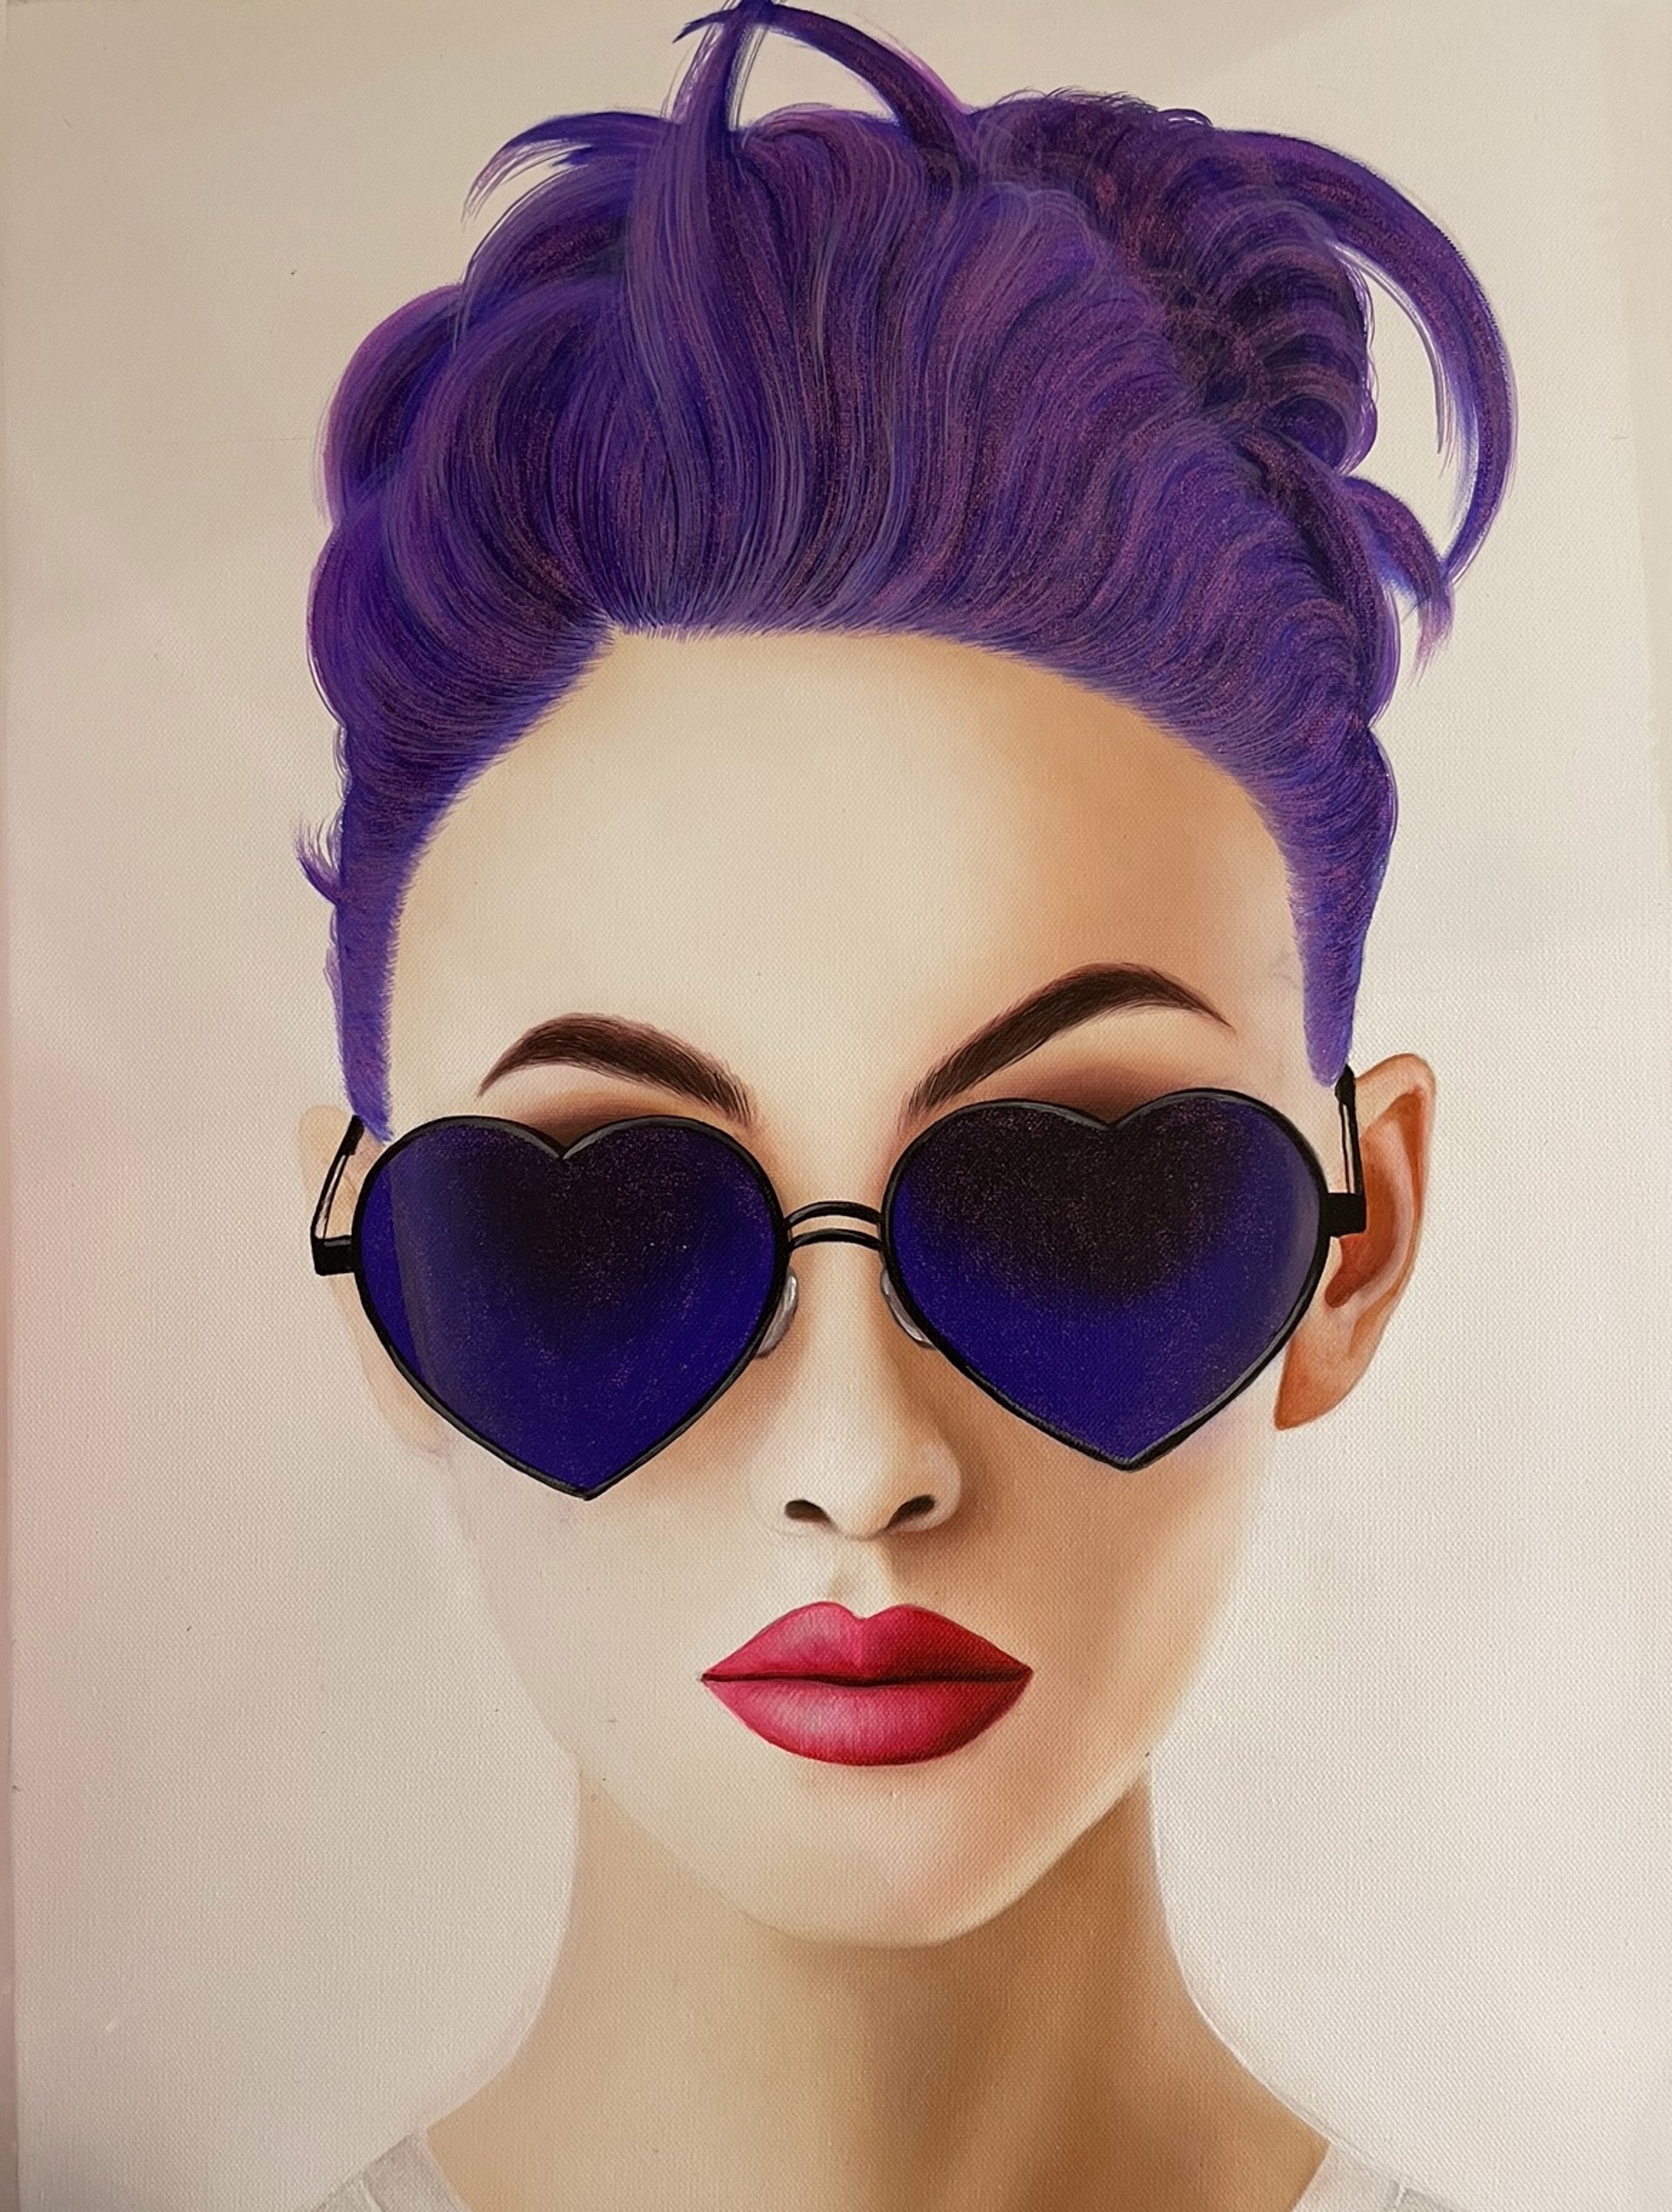 "Elizabeth in Purple" by Roni M